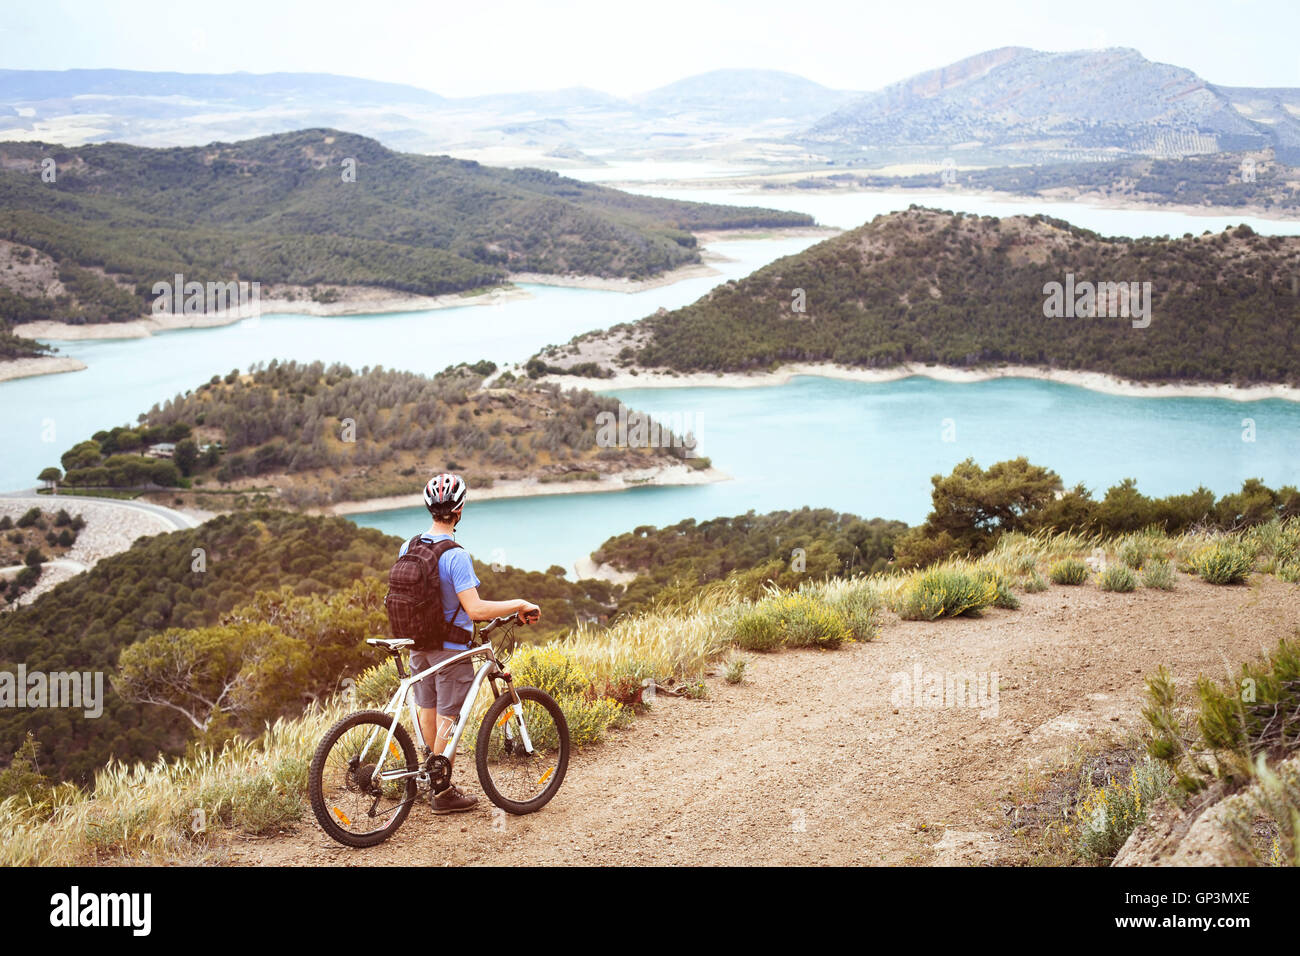 Cycliste avec vtt avec sa vue panoramique en plein air, d'aventure extrême Banque D'Images